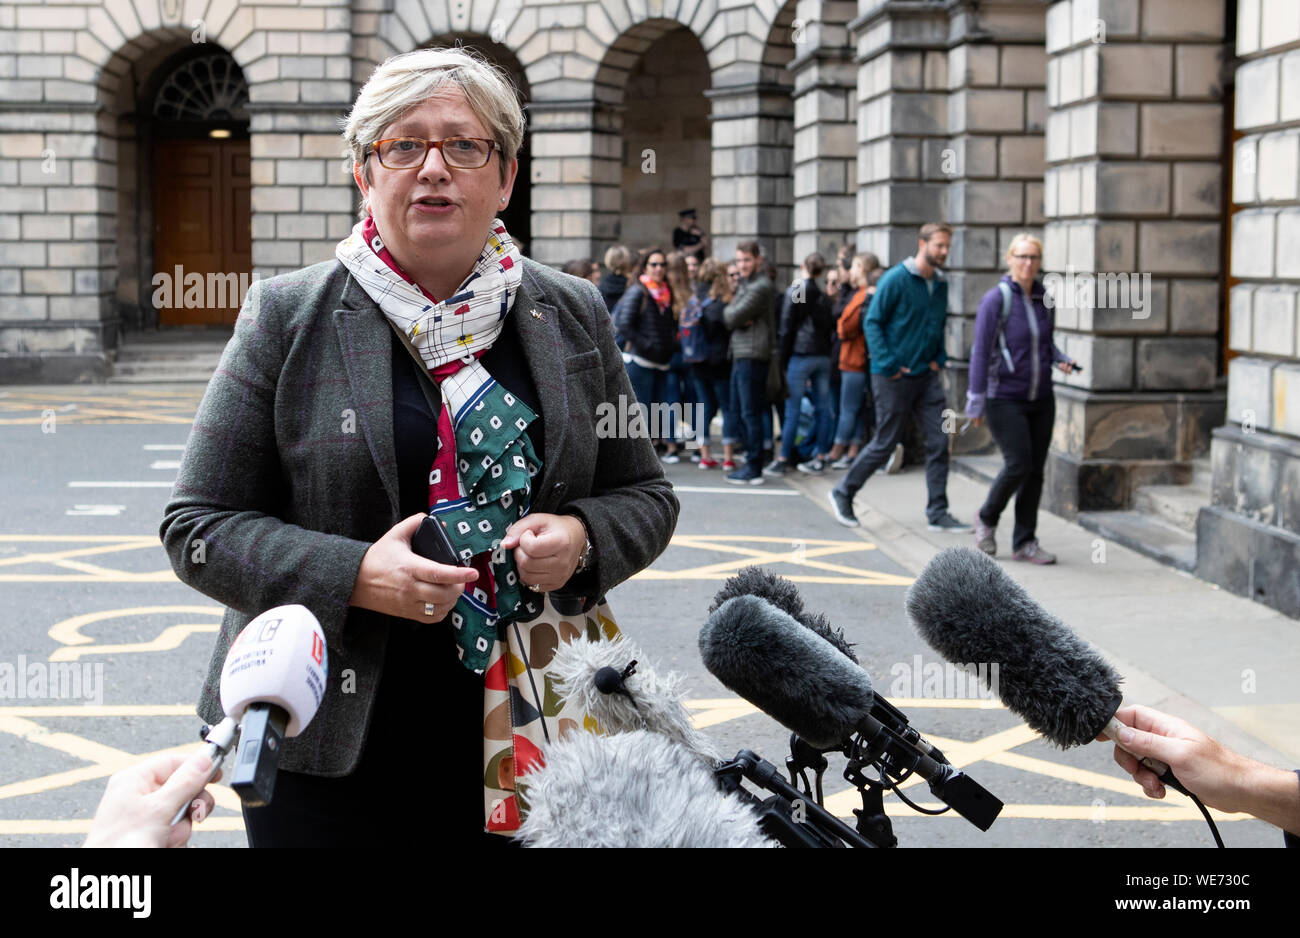 SNP MP Joanna Cherry außerhalb des Gerichts Tagung in Edinburgh, wo Parlamentarier suchten, eine vorläufige Beschlagnahme durch die schottischen Rechtssystems, das würde verhindern, dass das britische Parlament ausgesetzt. Ihr Antrag wurde von Herrn Doherty abgelehnt, sagte, er sei nicht zufrieden, es war eine "zwingende Notwendigkeit" für ein Gebot. Stockfoto